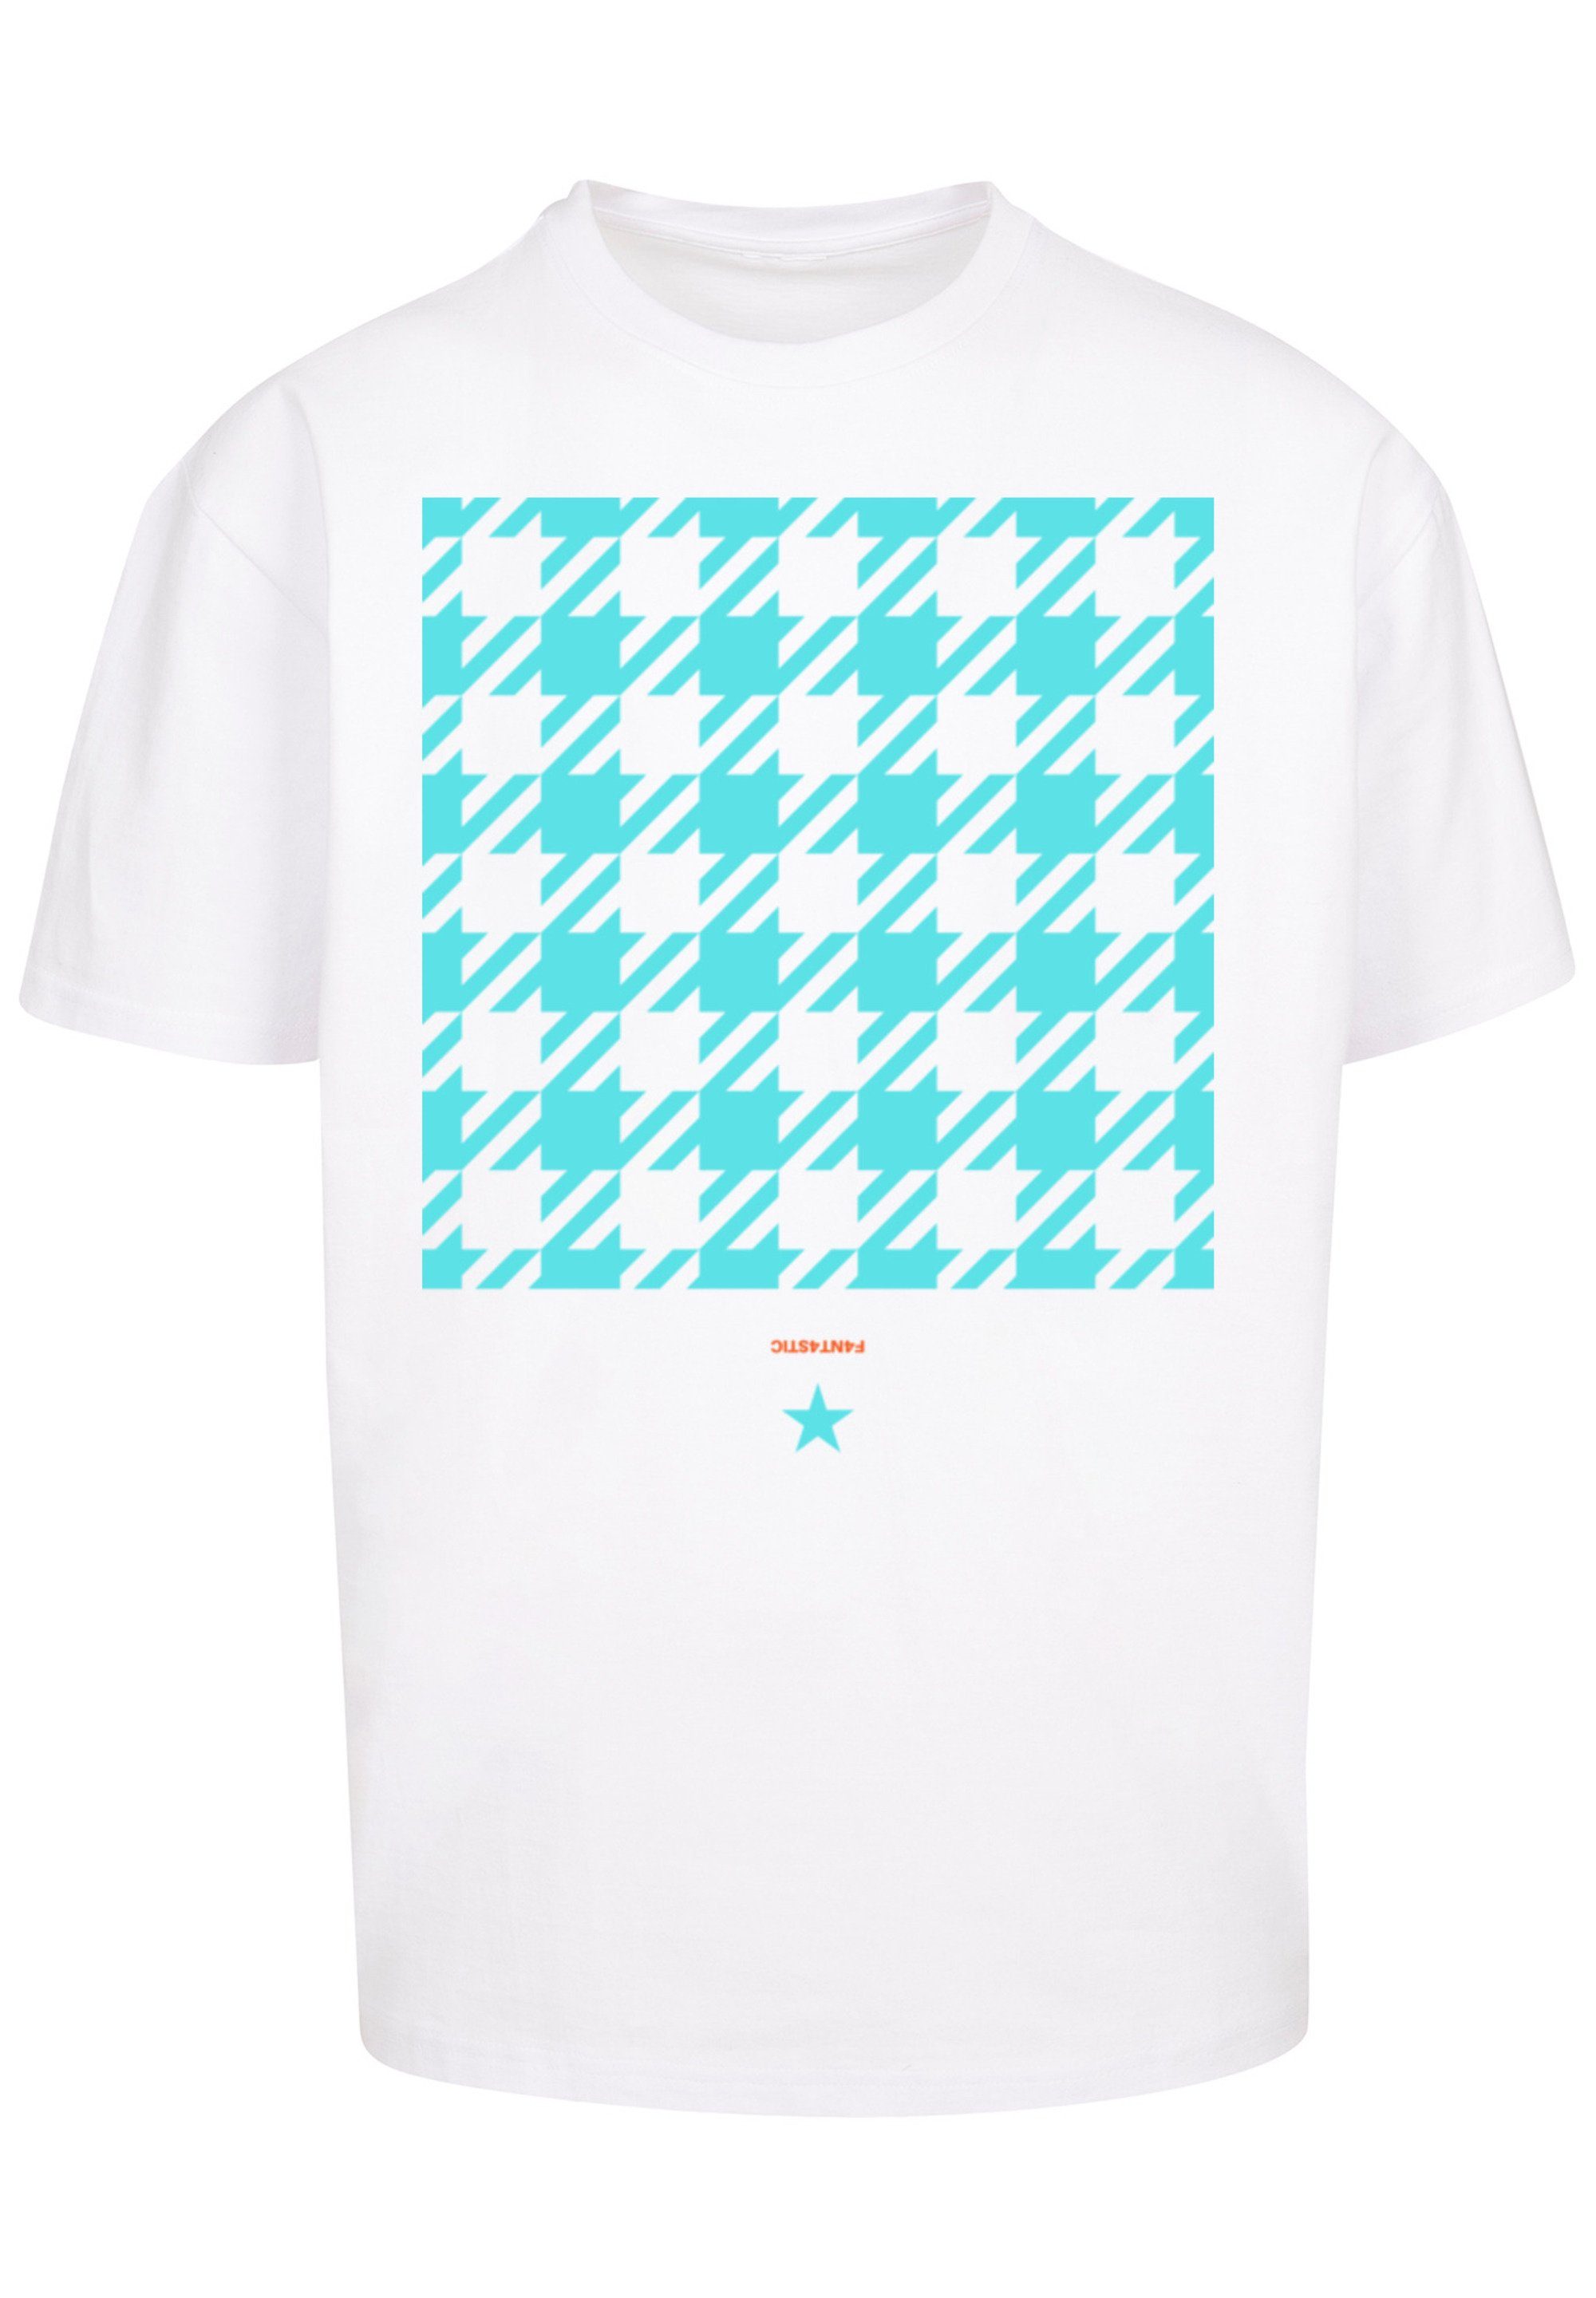 T-Shirt F4NT4STIC Print Hahnentritt blau Karo weiß